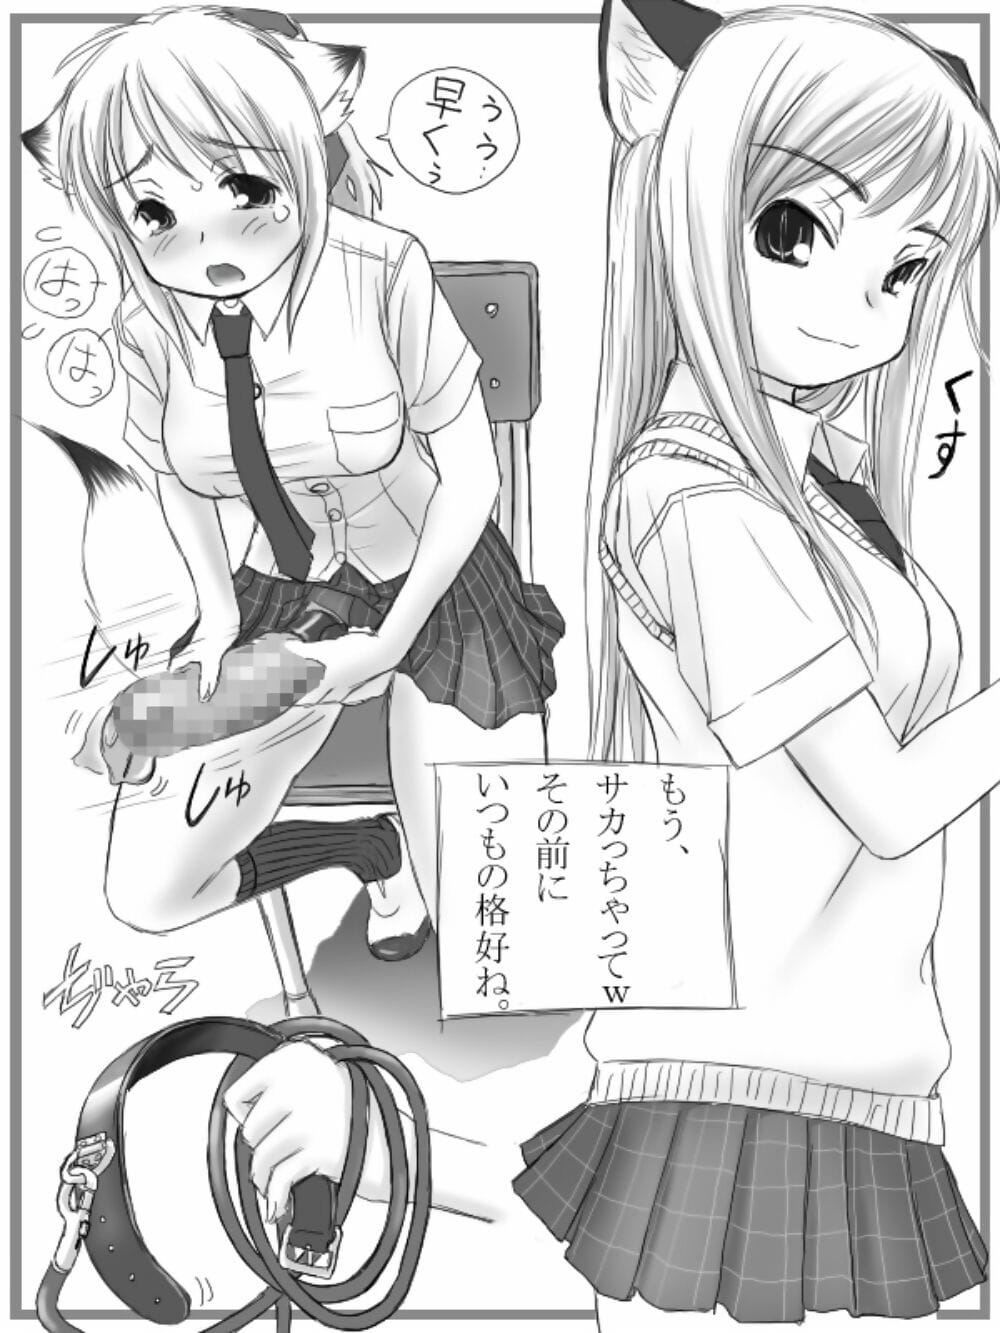 Mui-Garou mui Futanari-san Illustration-shuu + omake manga Digital - part 3